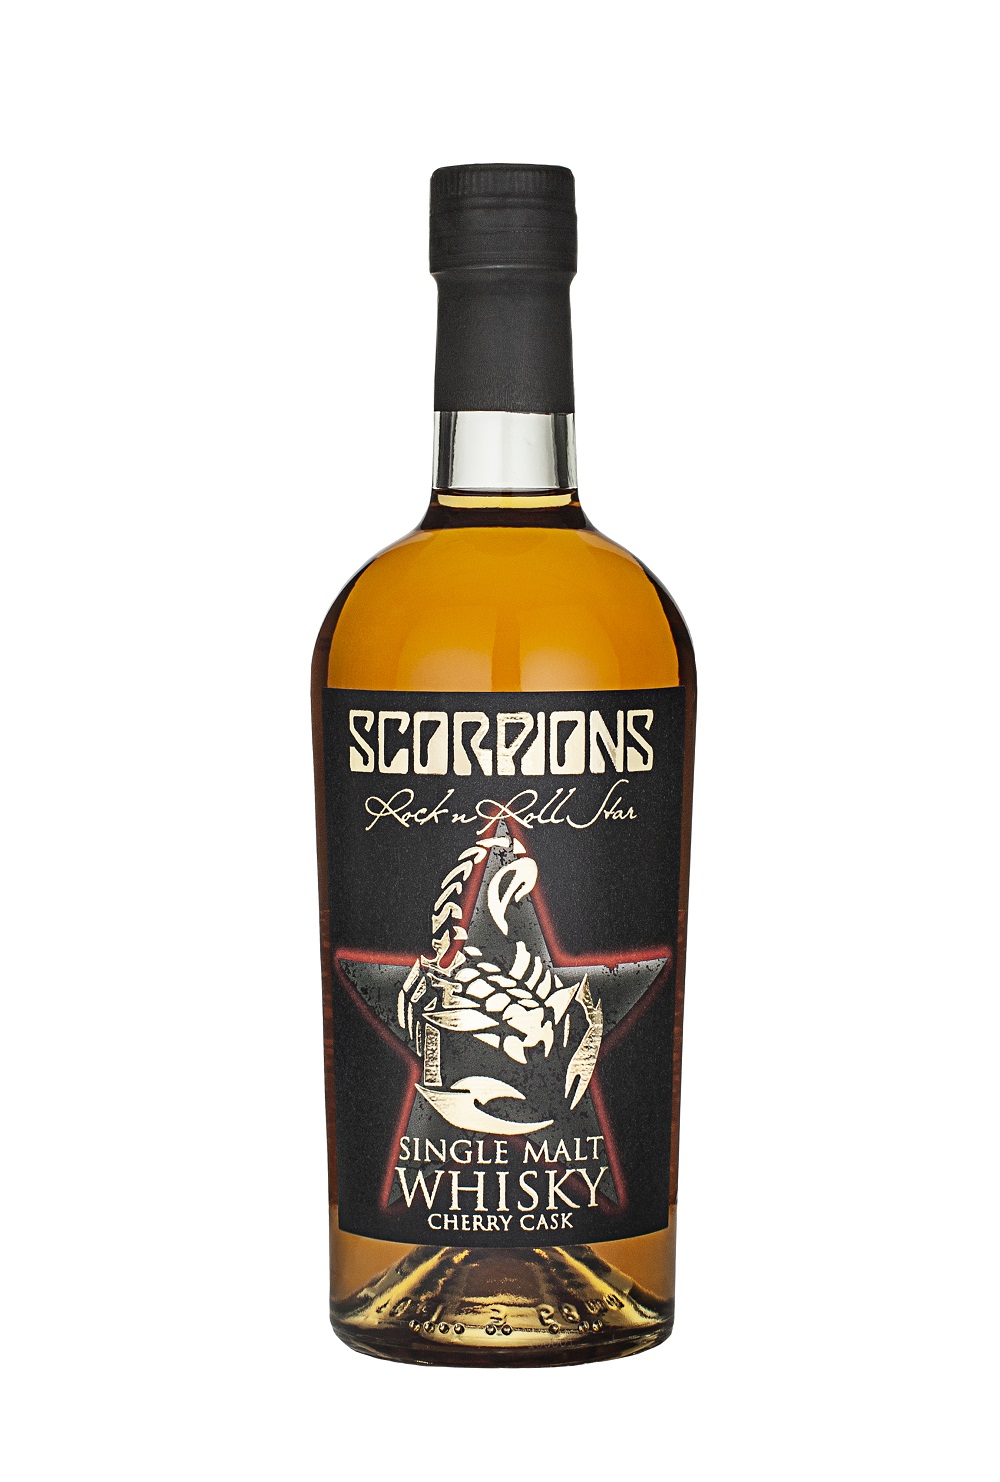 Die Scorpions feiern ihren eigenen Whisky!